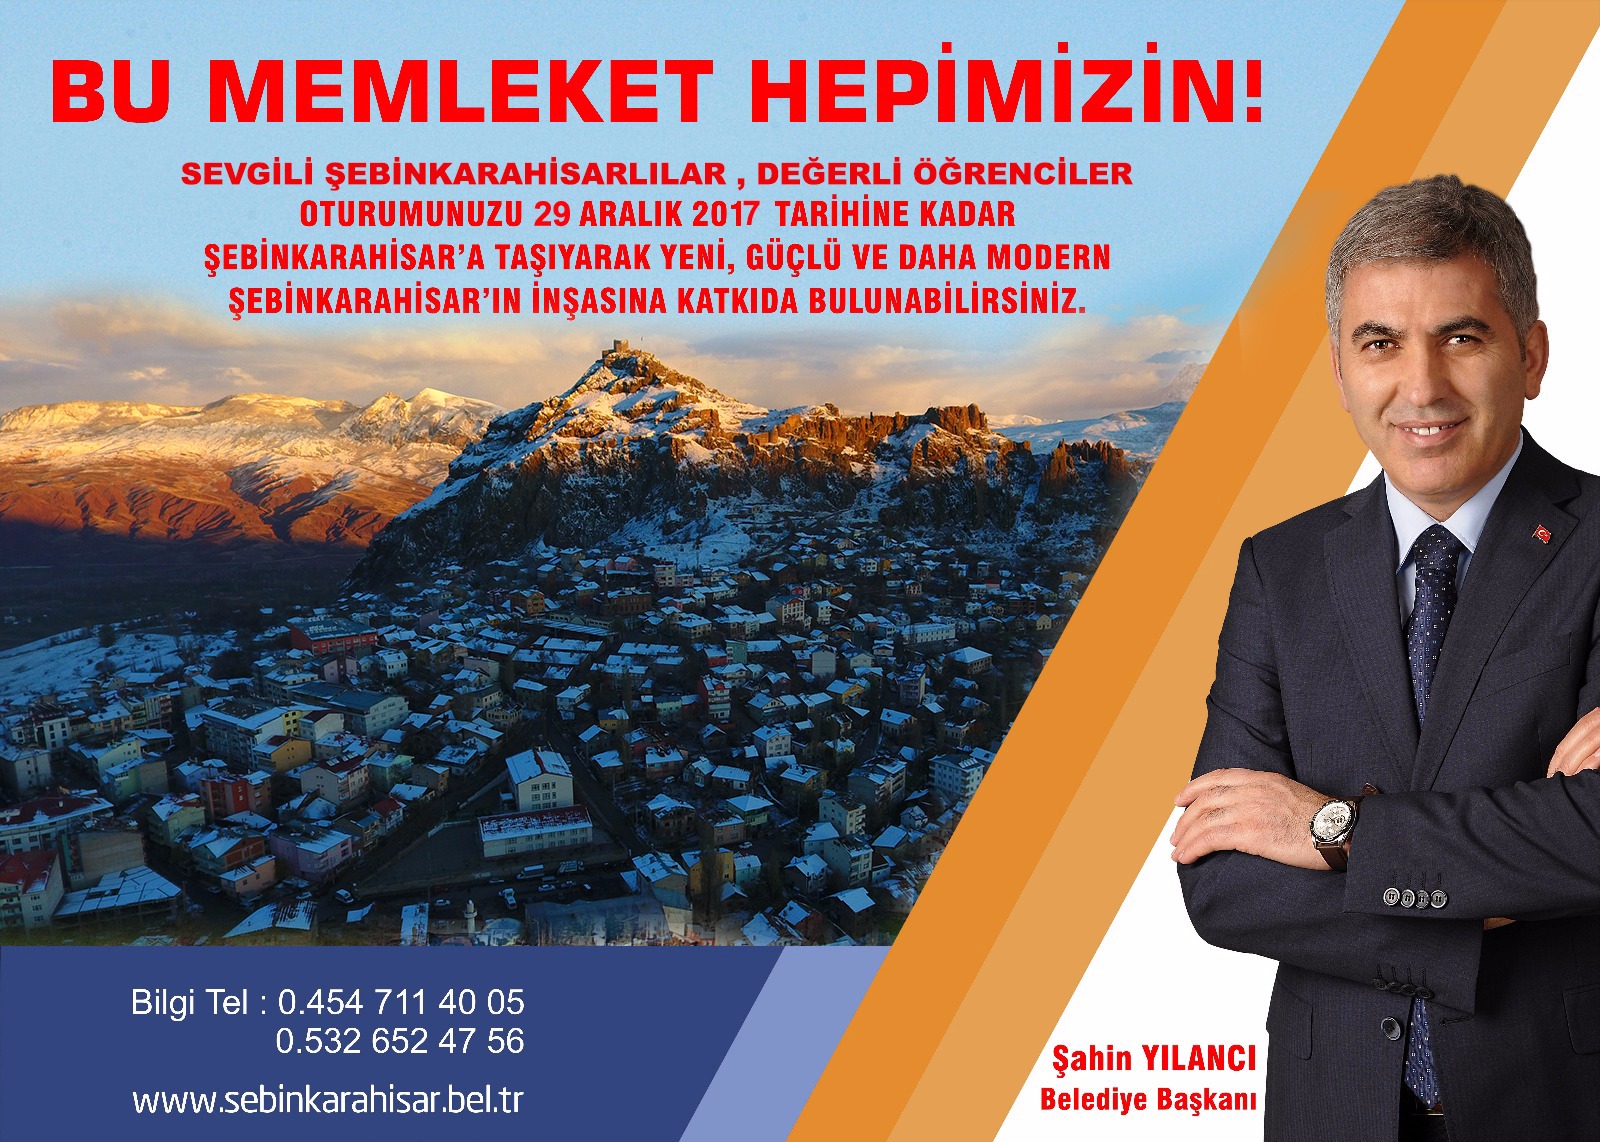 Şebinkarahisar Belediye Başkanı Şahin Yılancıdan önemli duyuru..